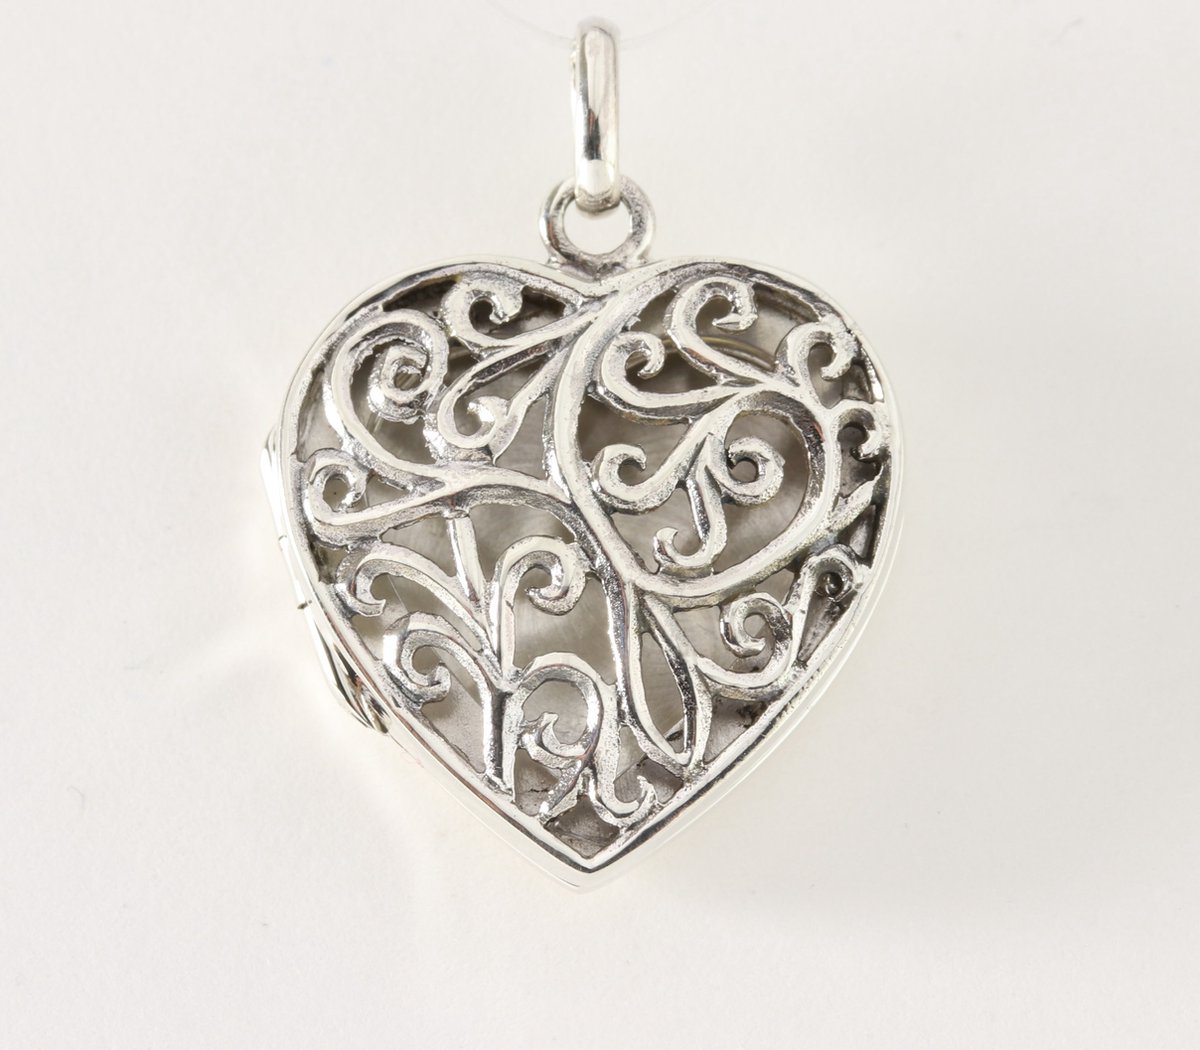 Opengewerkt hartvormig zilveren medaillon